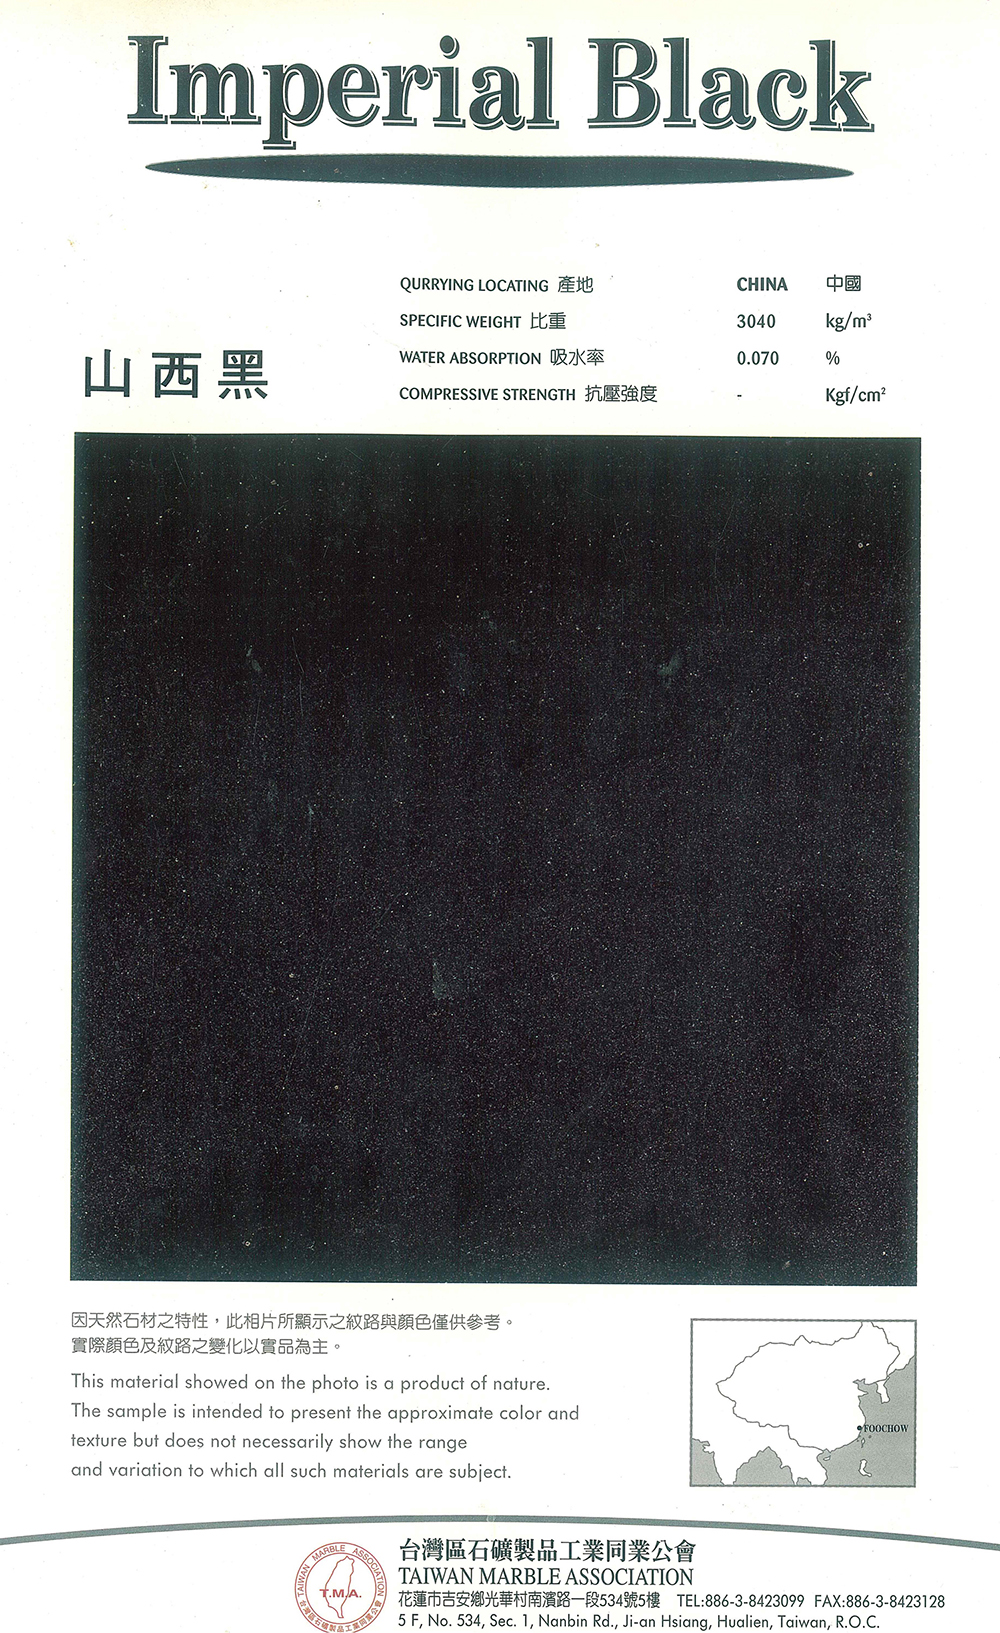 84.山西黑_Imperial Black.jpg